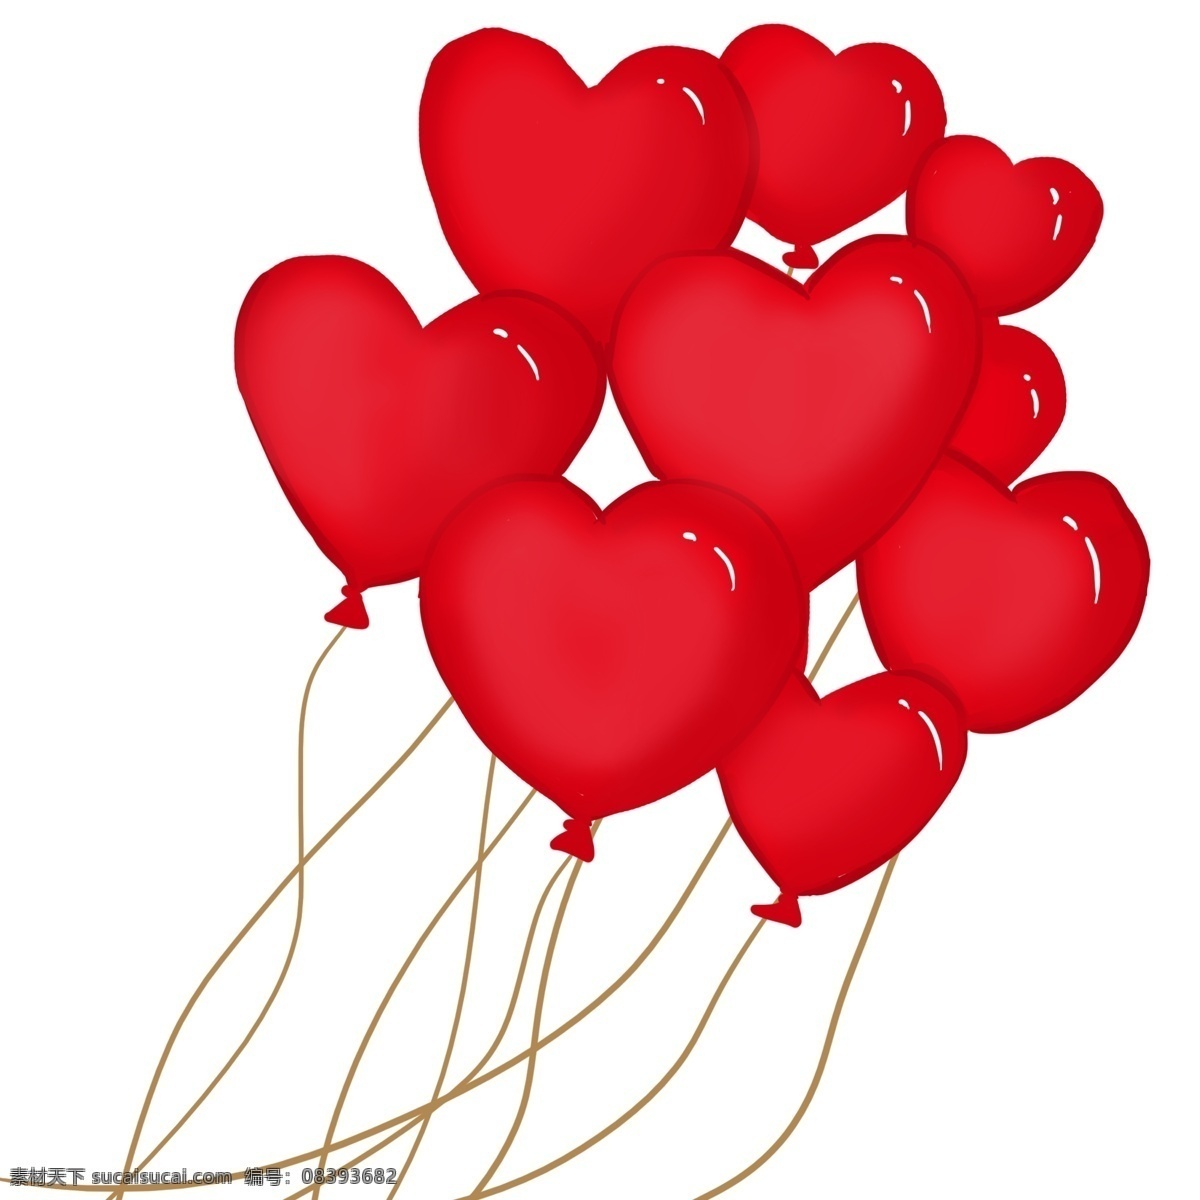 手绘 桃 心 气球 插画 结婚 爱情 爱心气球 手绘气球 桃心气球 红色气球 婚礼气球 气球插画